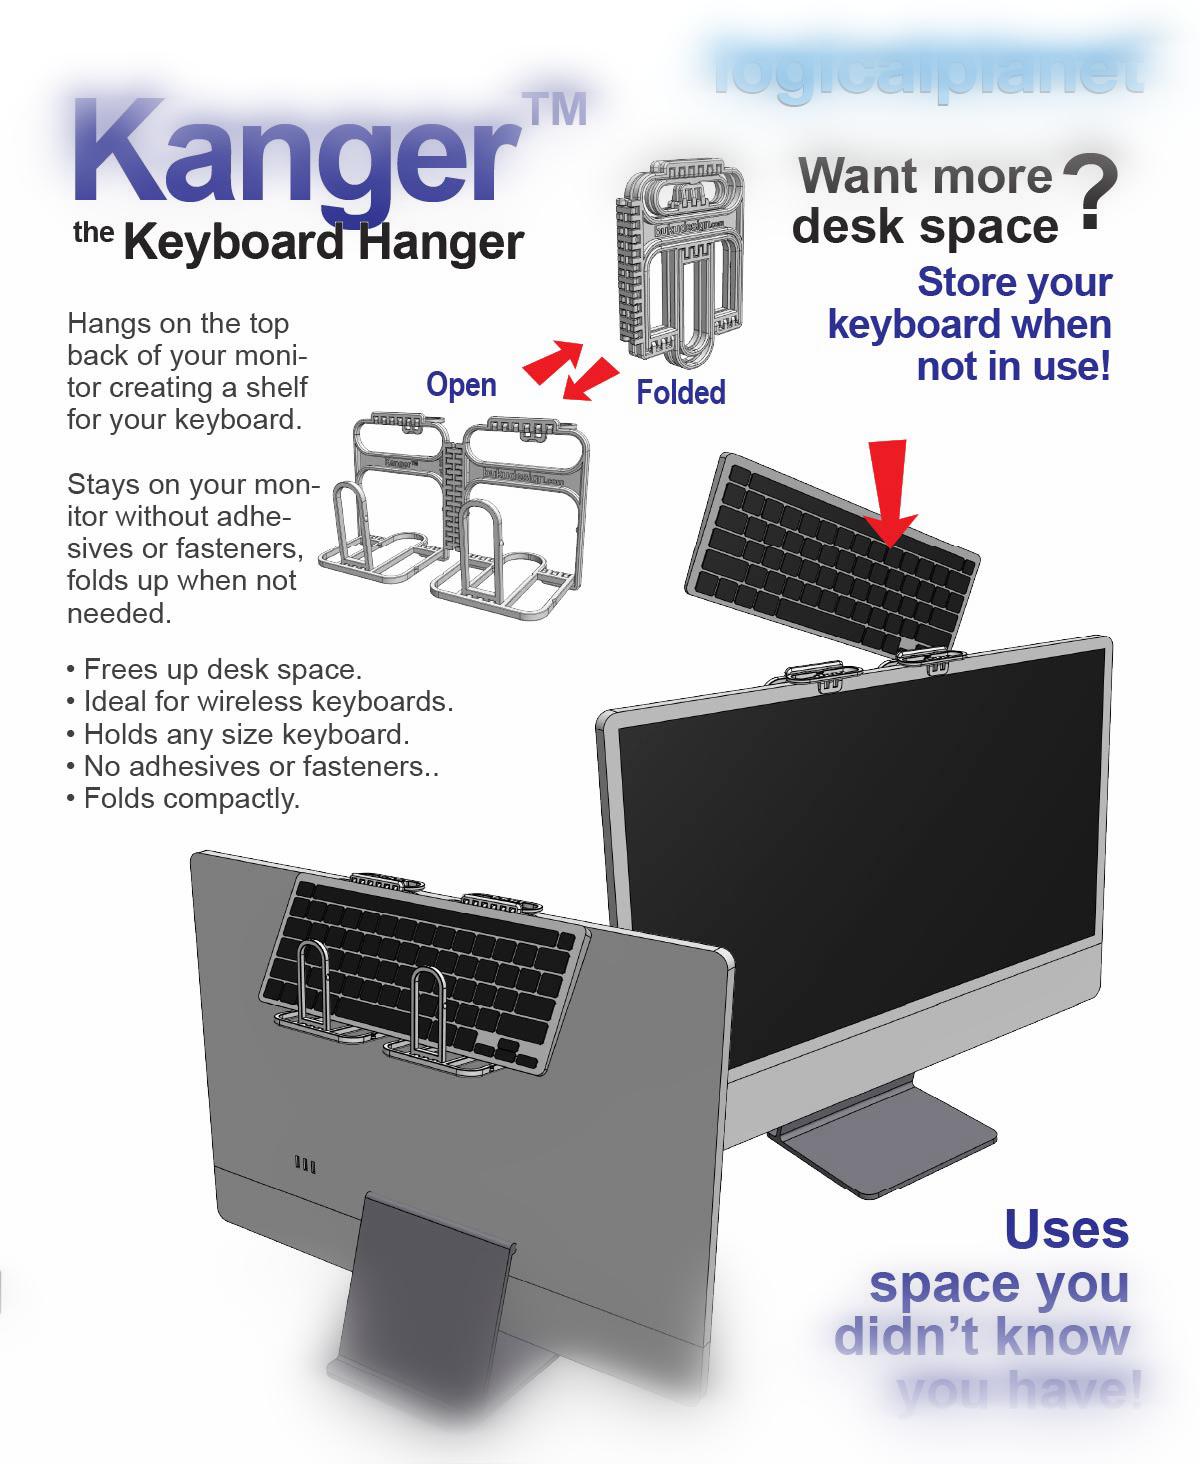 Kanger - the Keyboard Hanger 3d model